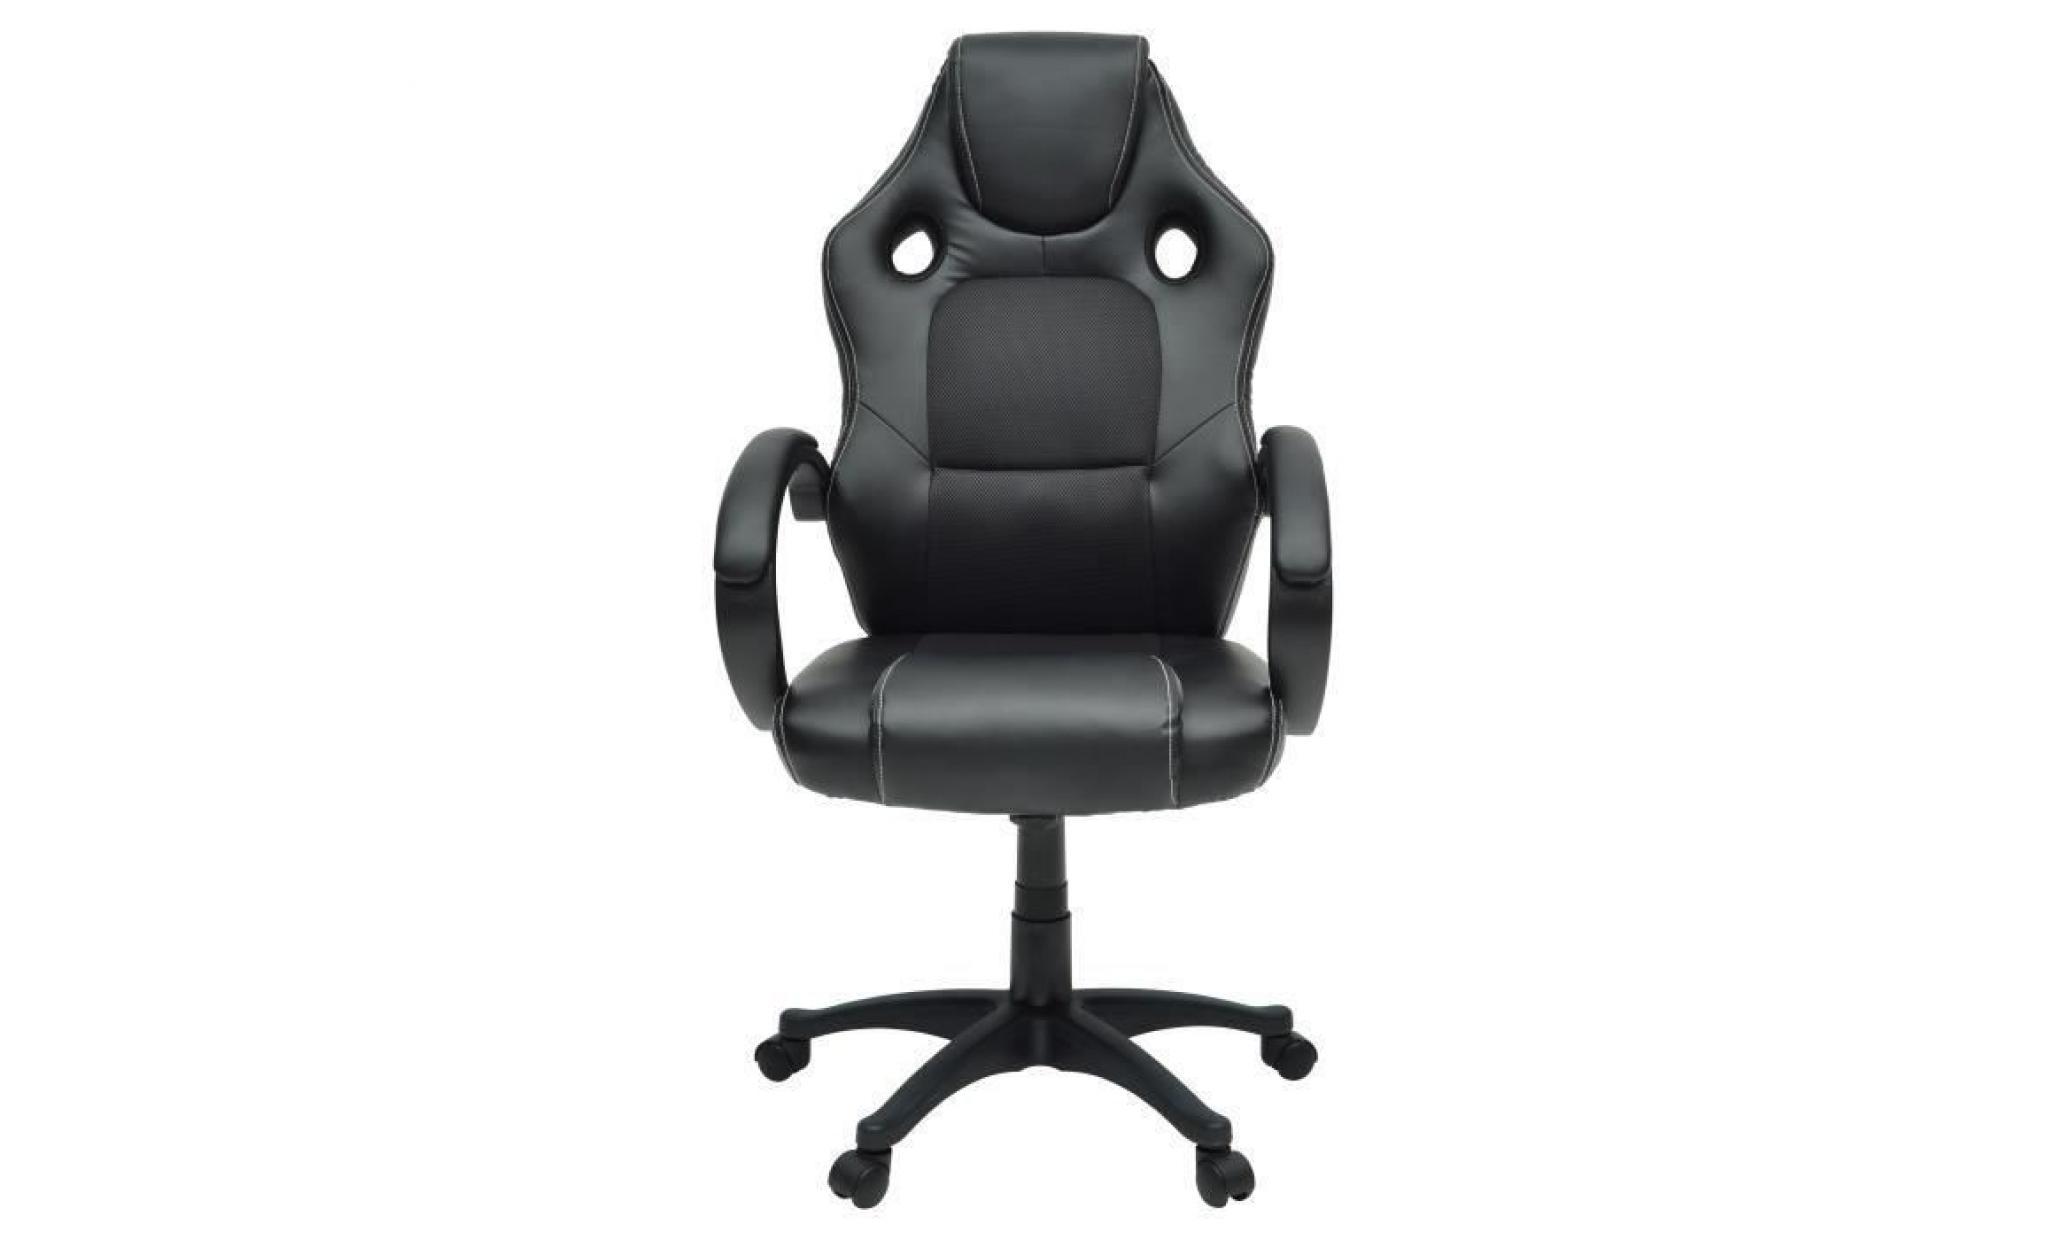 ouistore chaise gamer design baquet   simili et tissu noir   style contemporain   l 50 x p 42.5 cm pas cher